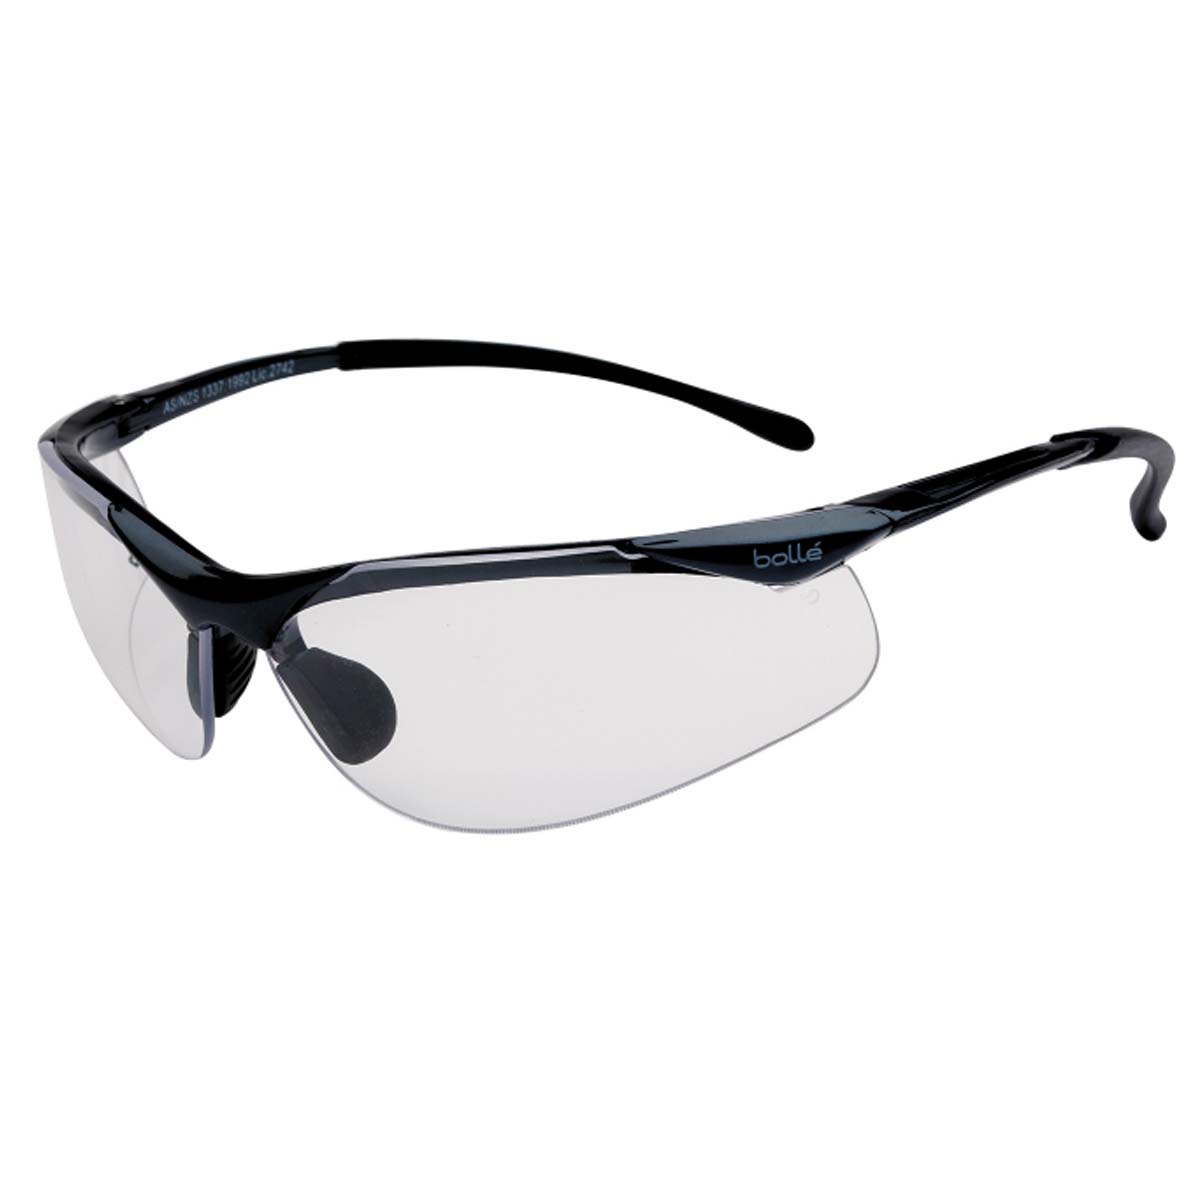 Kính BOLLE 1615501A Sidewinder Safety Glasses Clear Anti-Scratch/Anti-Fog Len (Gọng kim loại, phủ bạch kim), (tặng kèm hộp đựng kính)